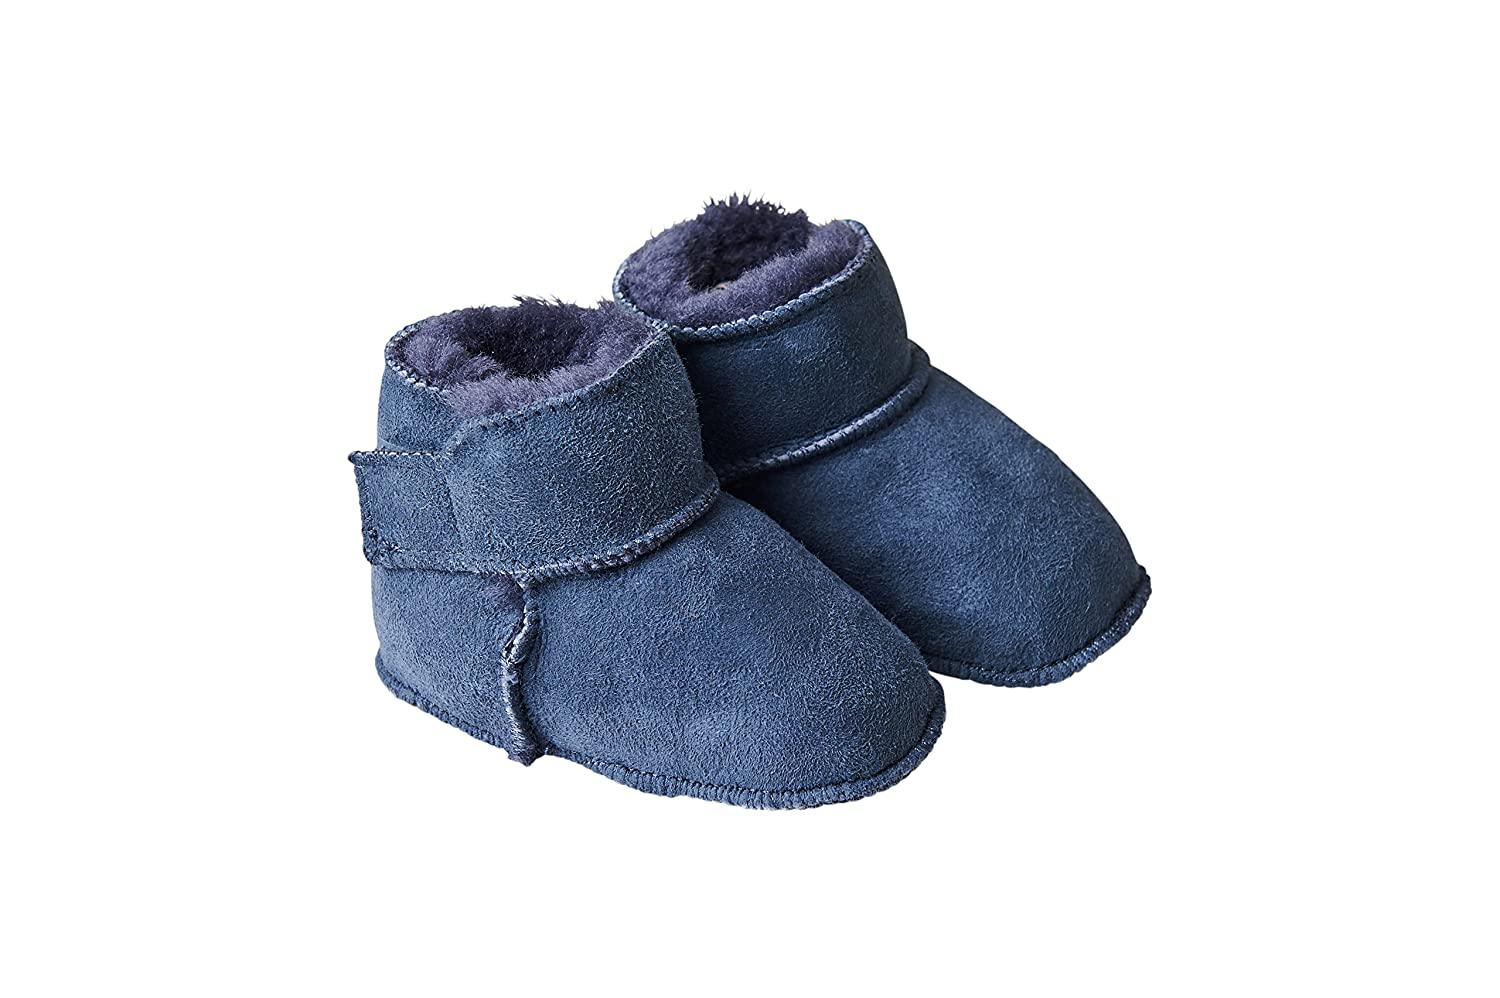 Fellhof 5101 Cuddly Baby Boots, Size 1 (16/17) 16/17